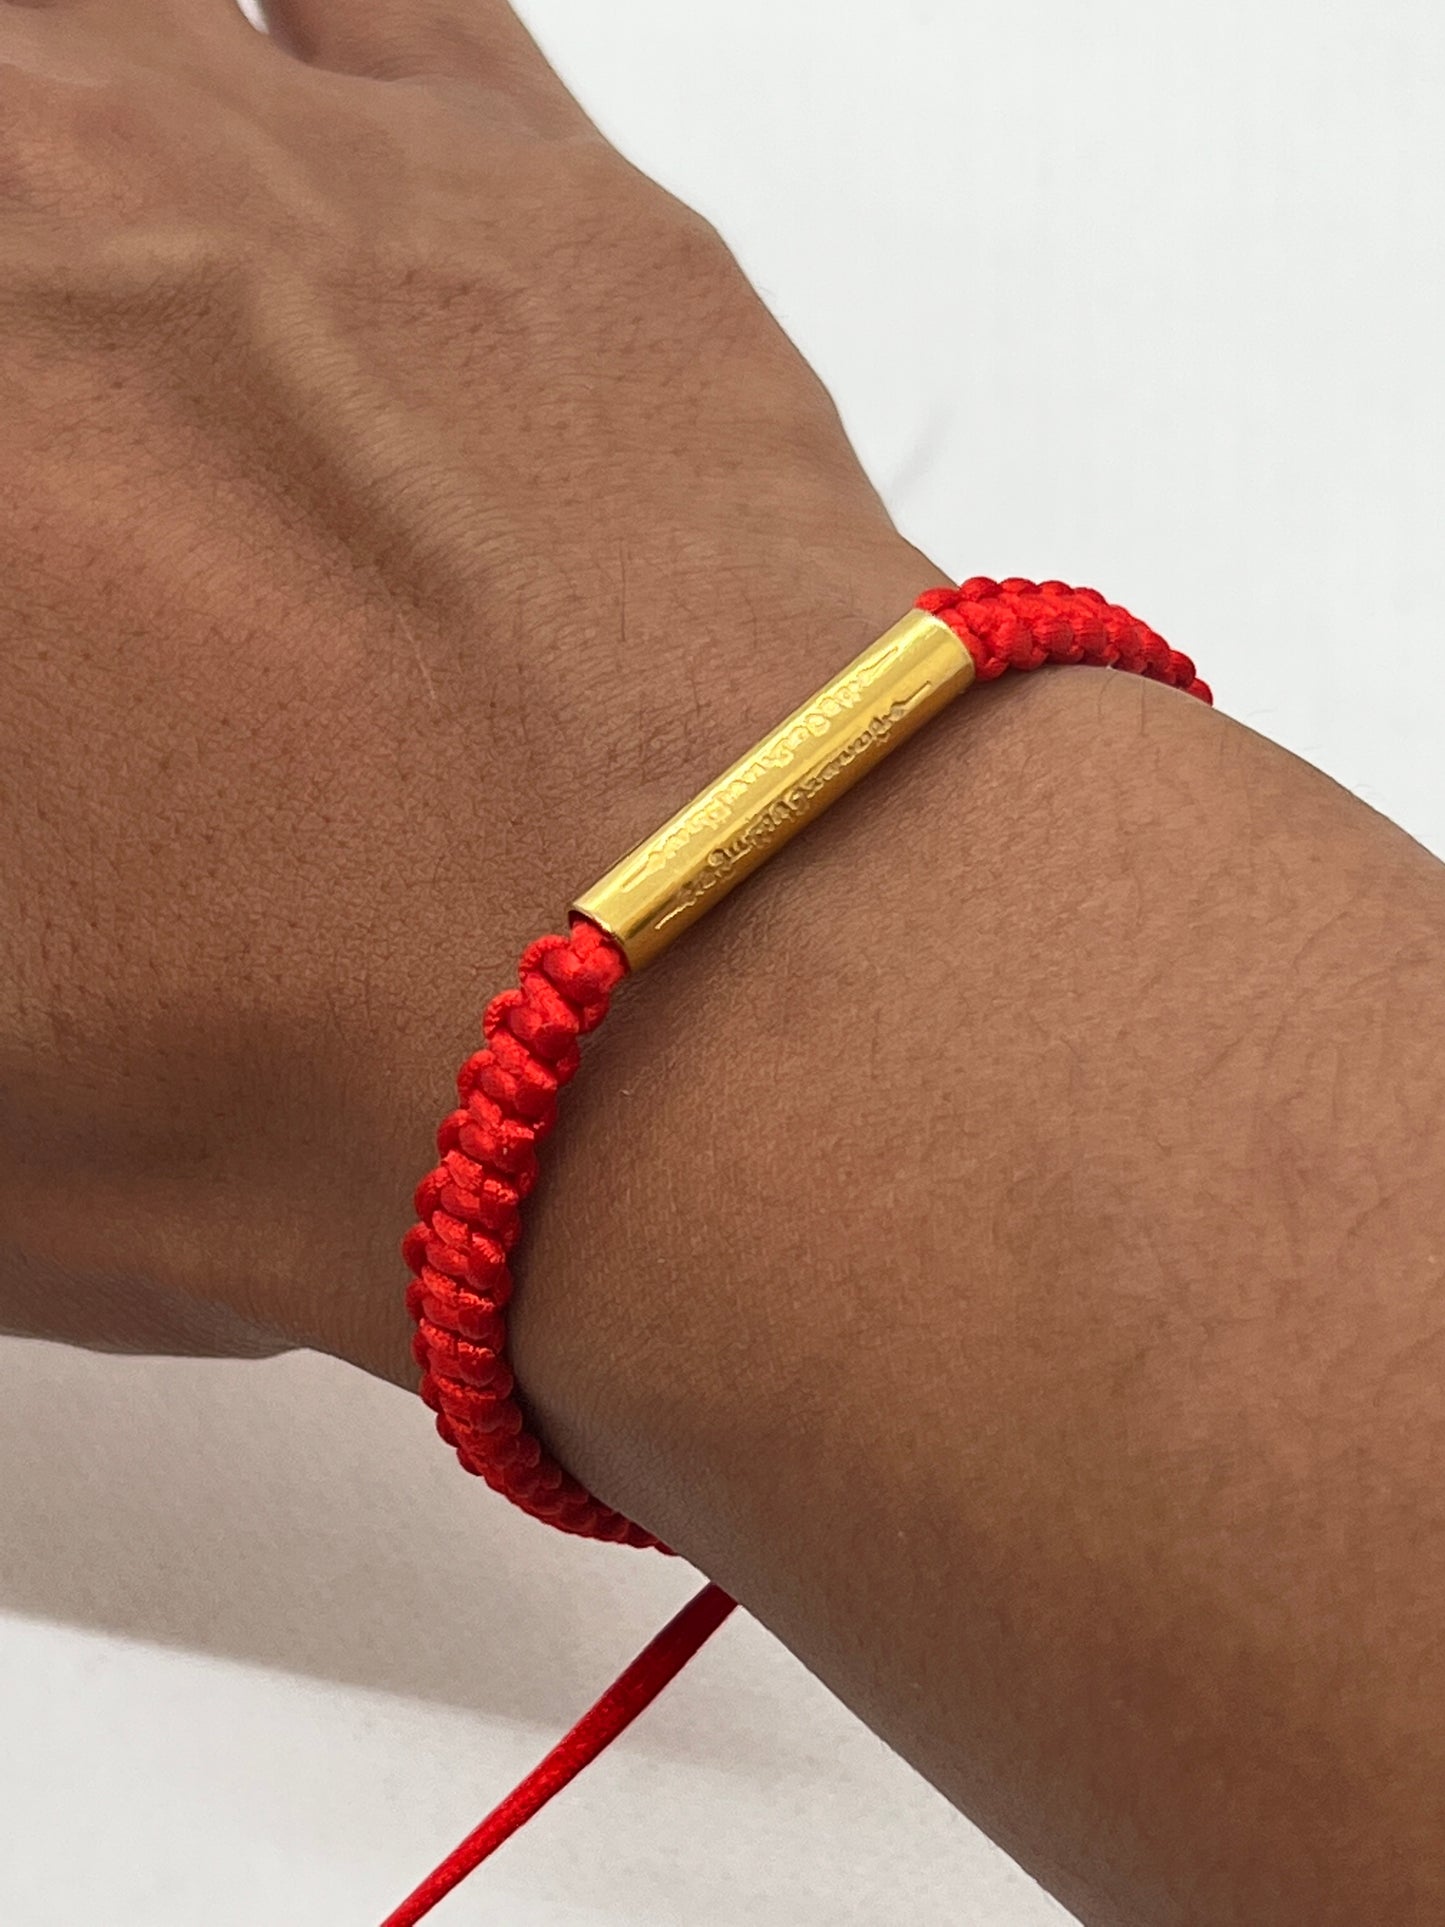 Bracelet Indien Porte Bonheur: Pour avoir toutes les chances de votre côté